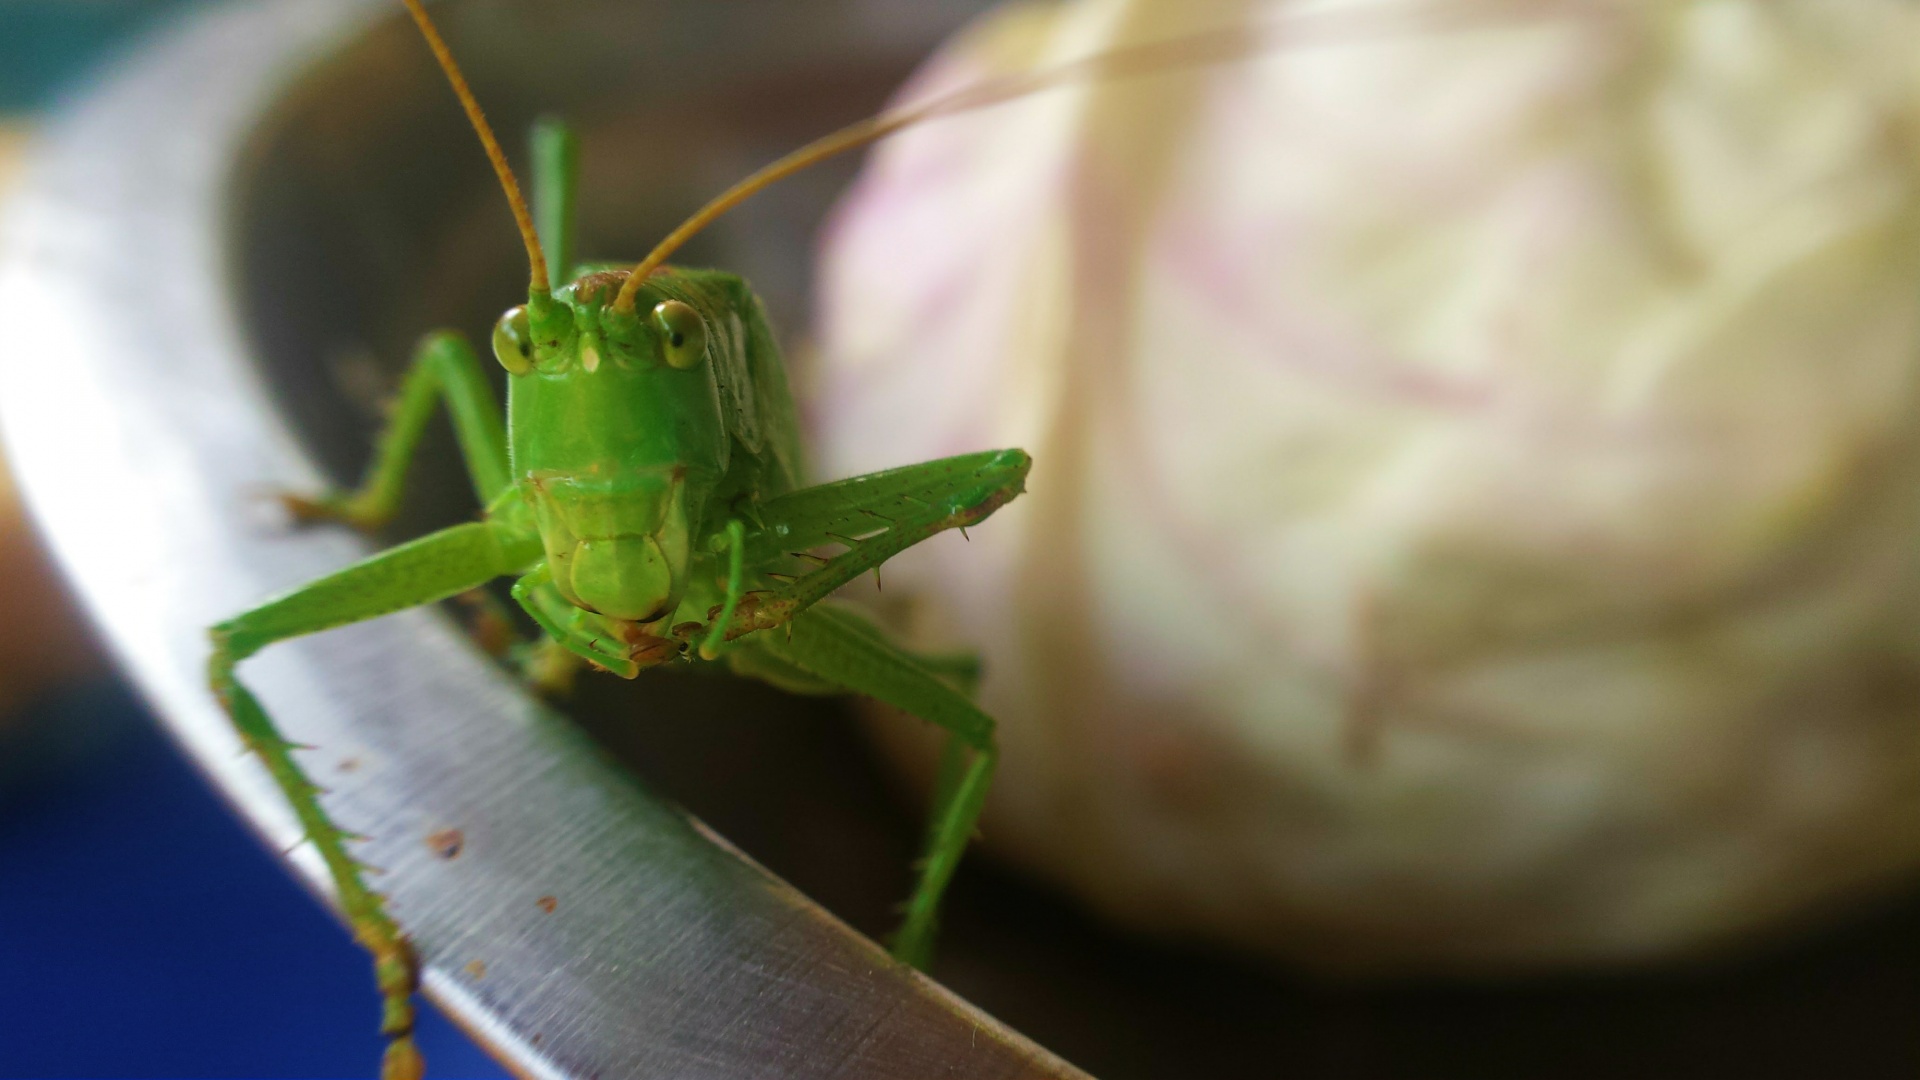 Grasshopper 1